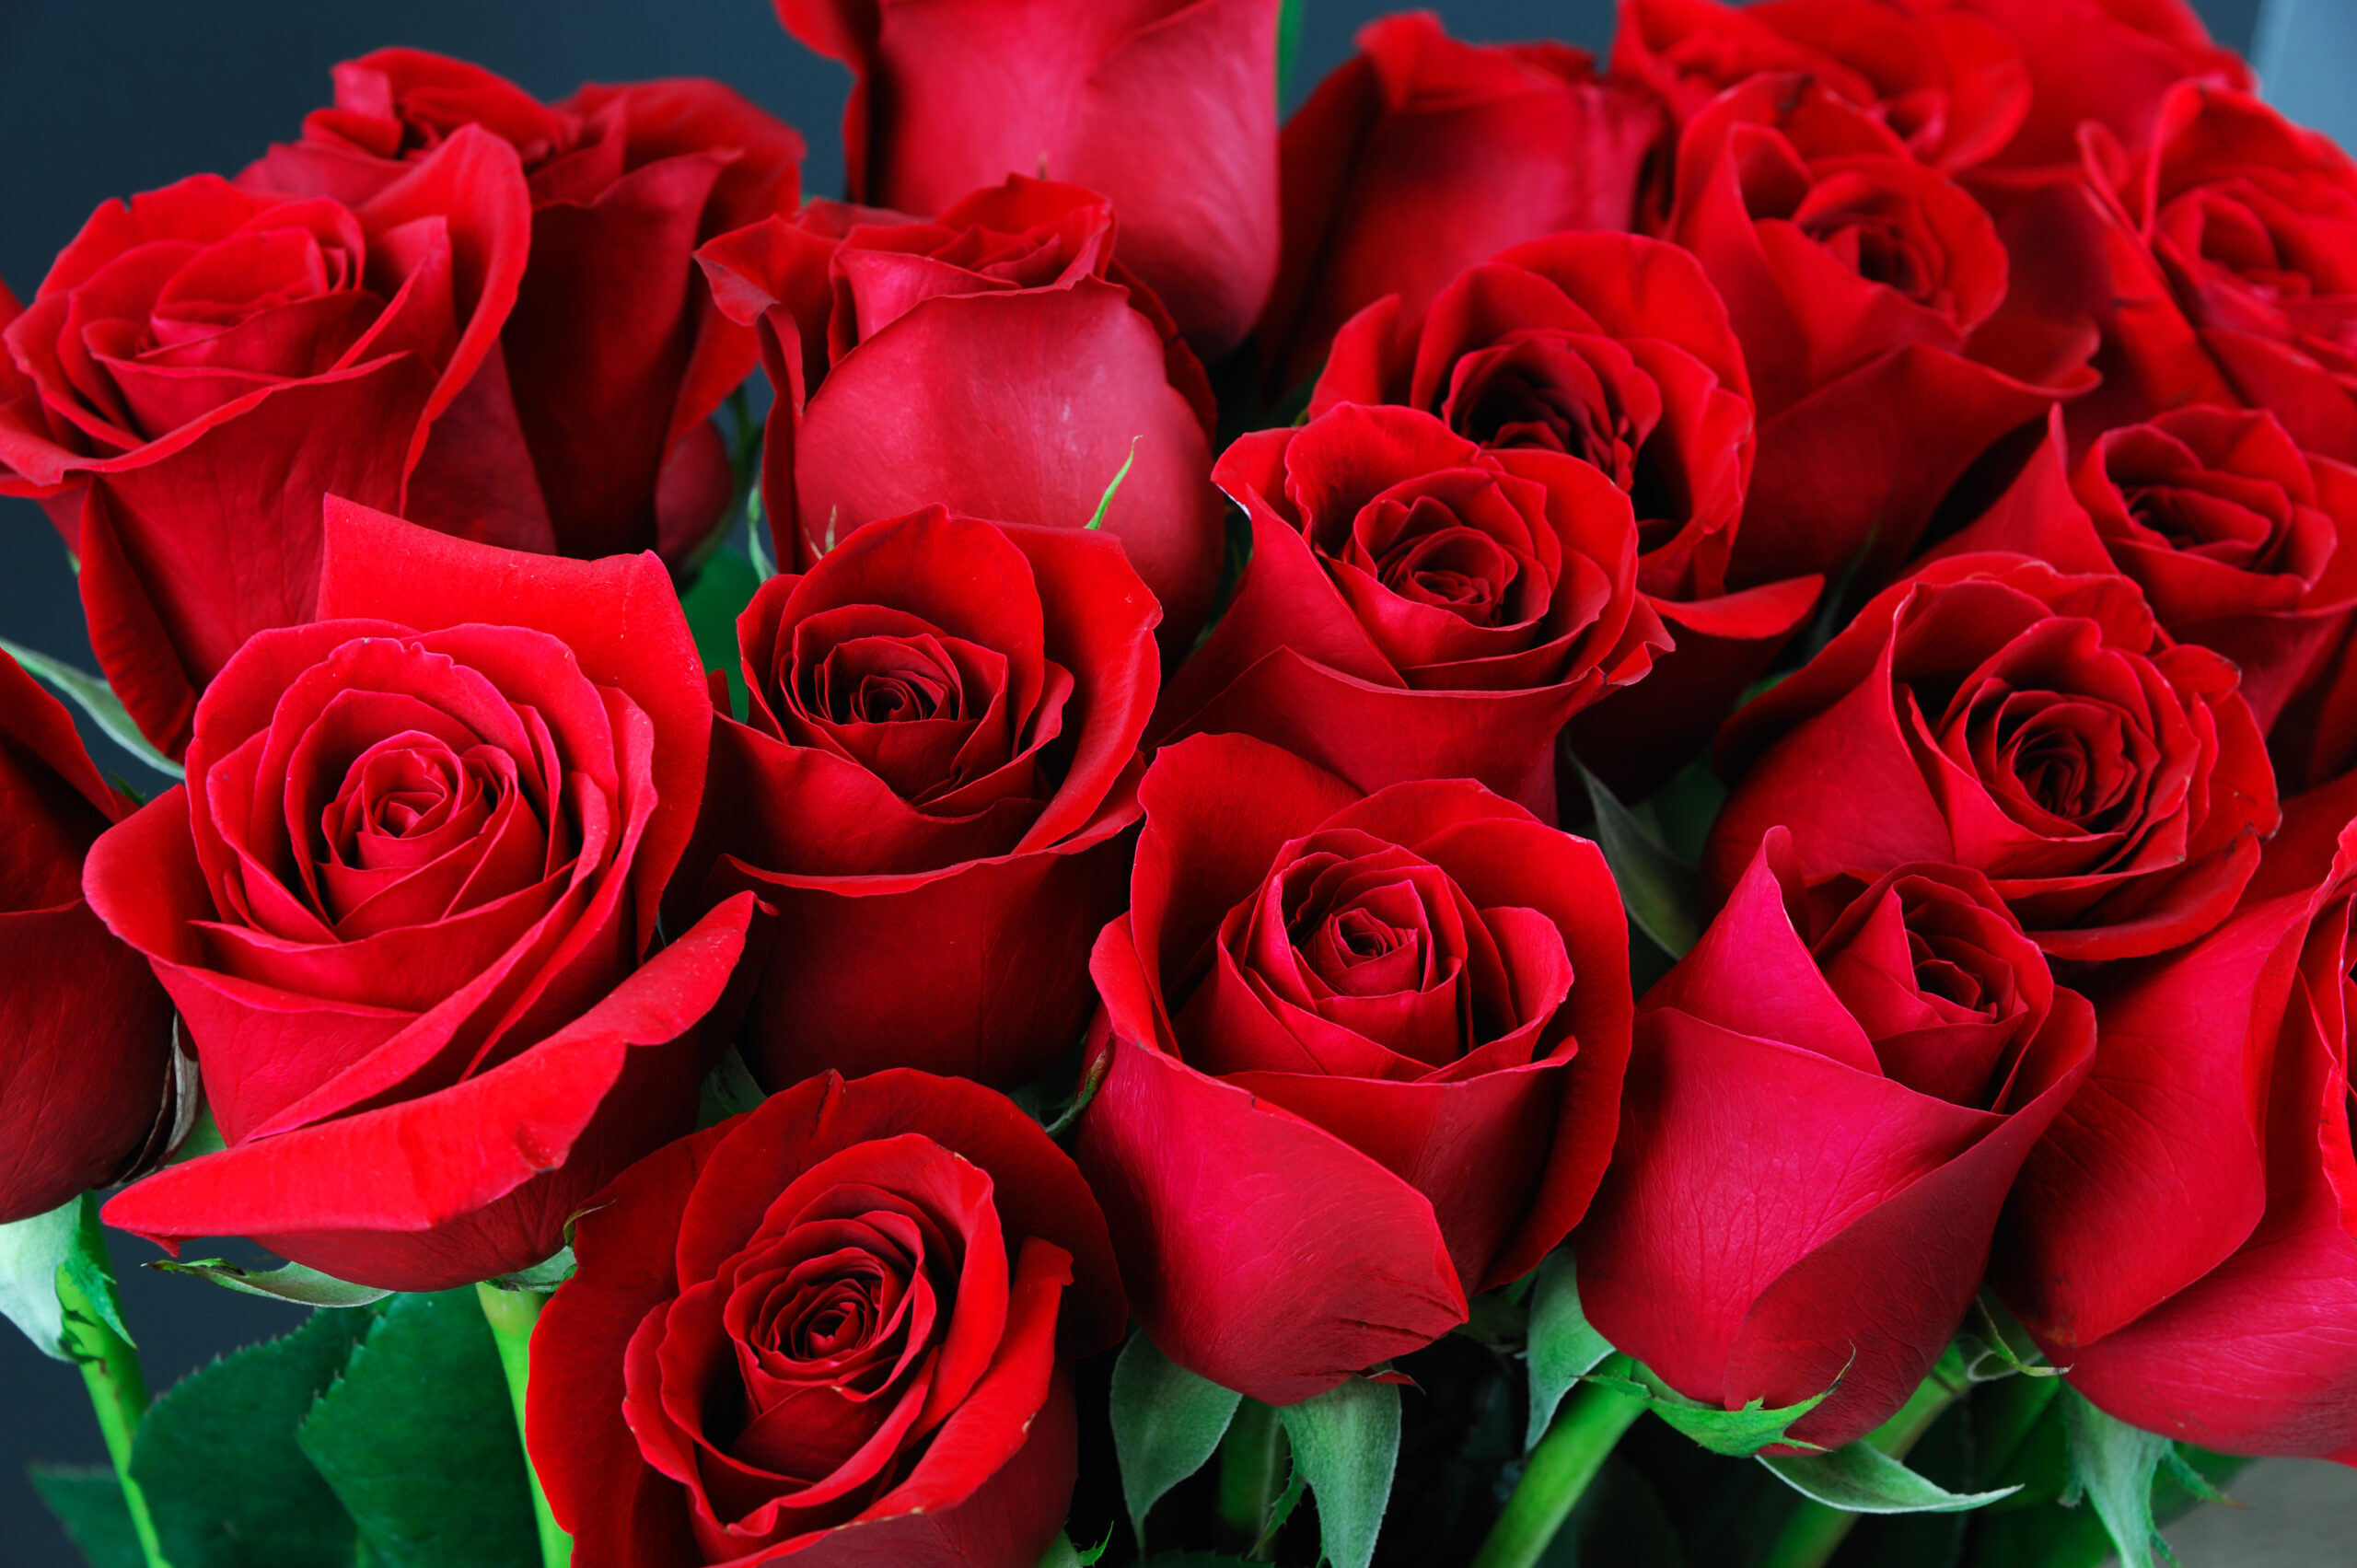 Le nombre de roses qu'un homme vous offre cache un secret...